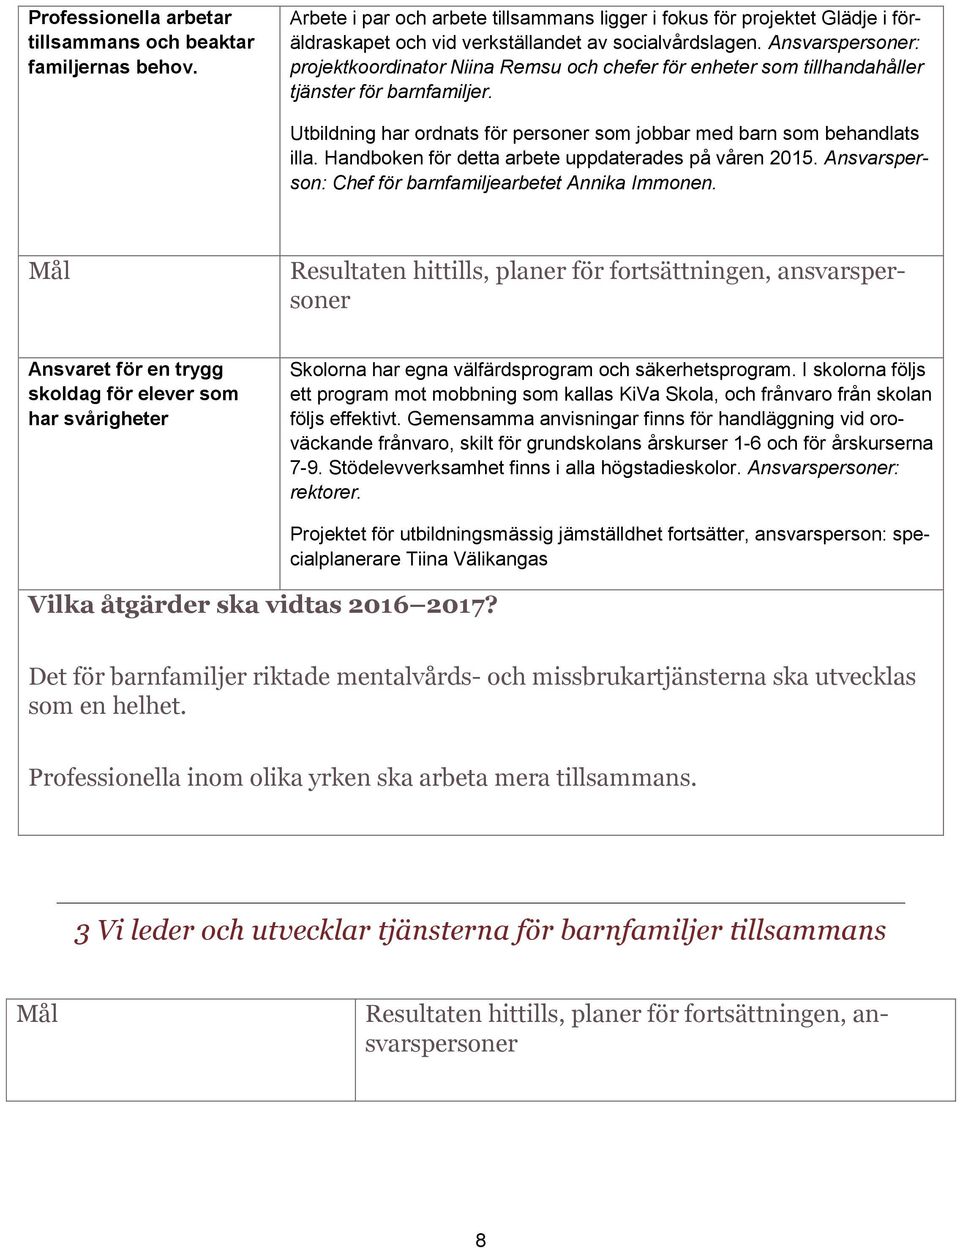 Handboken för detta arbete uppdaterades på våren 2015. Ansvarsperson: Chef för barnfamiljearbetet Annika Immonen.